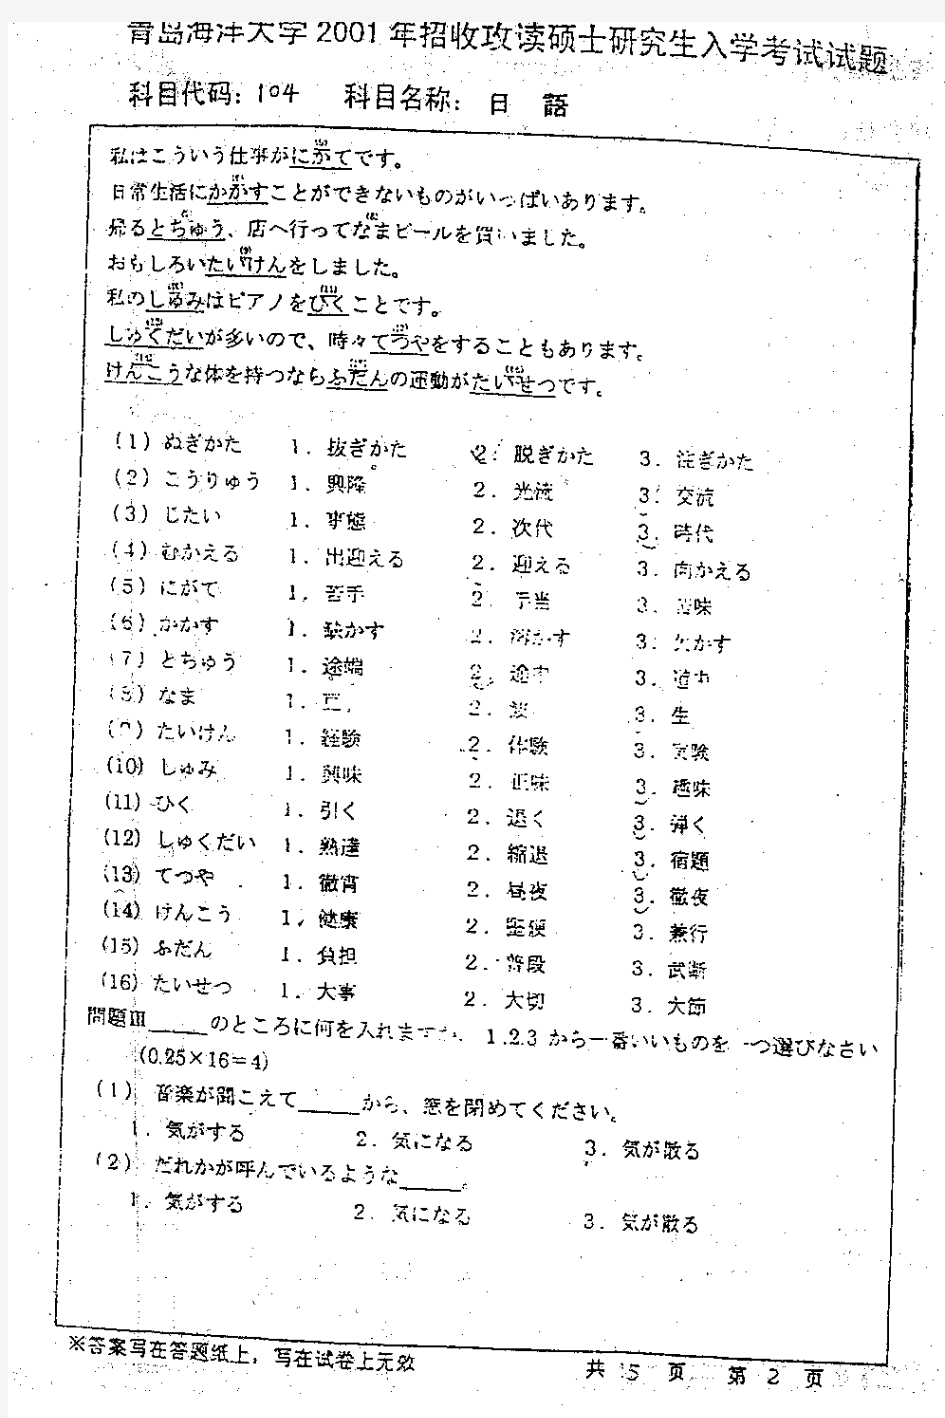 中国海洋大学 中国海大 2001年日语 考研真题及答案解析